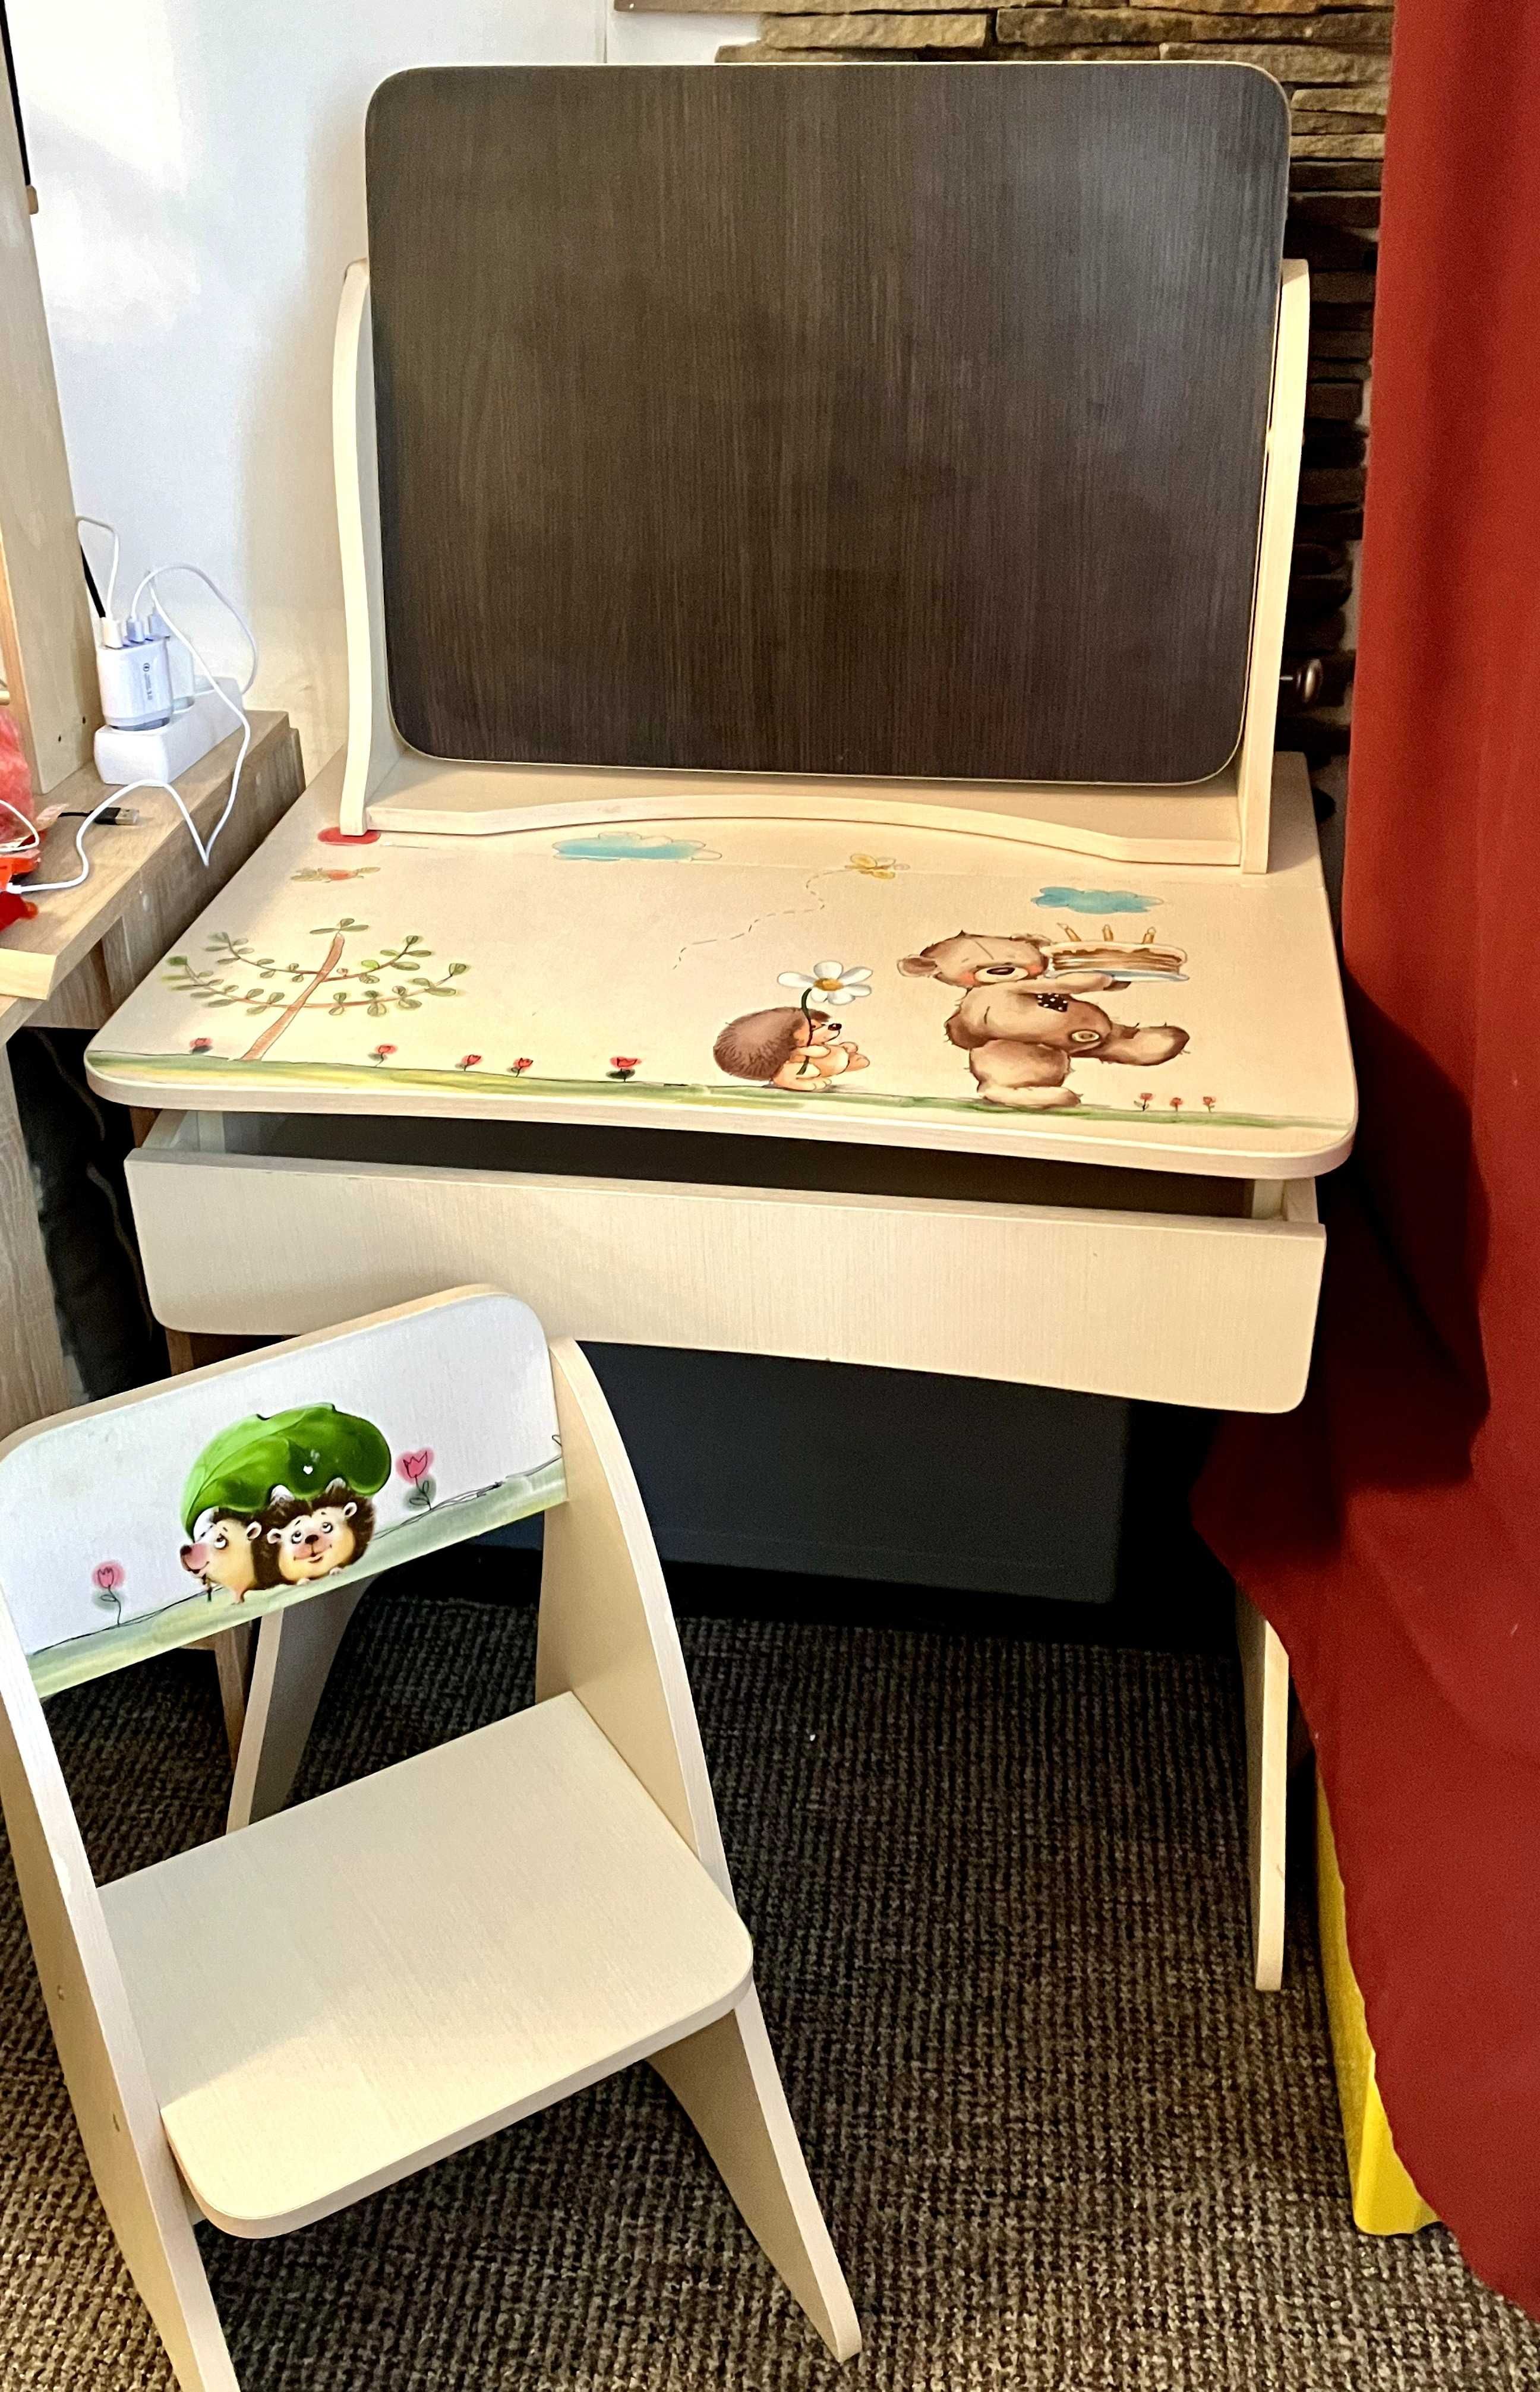 Дитячий столик (парта) і стільчик з дошкою для малювання